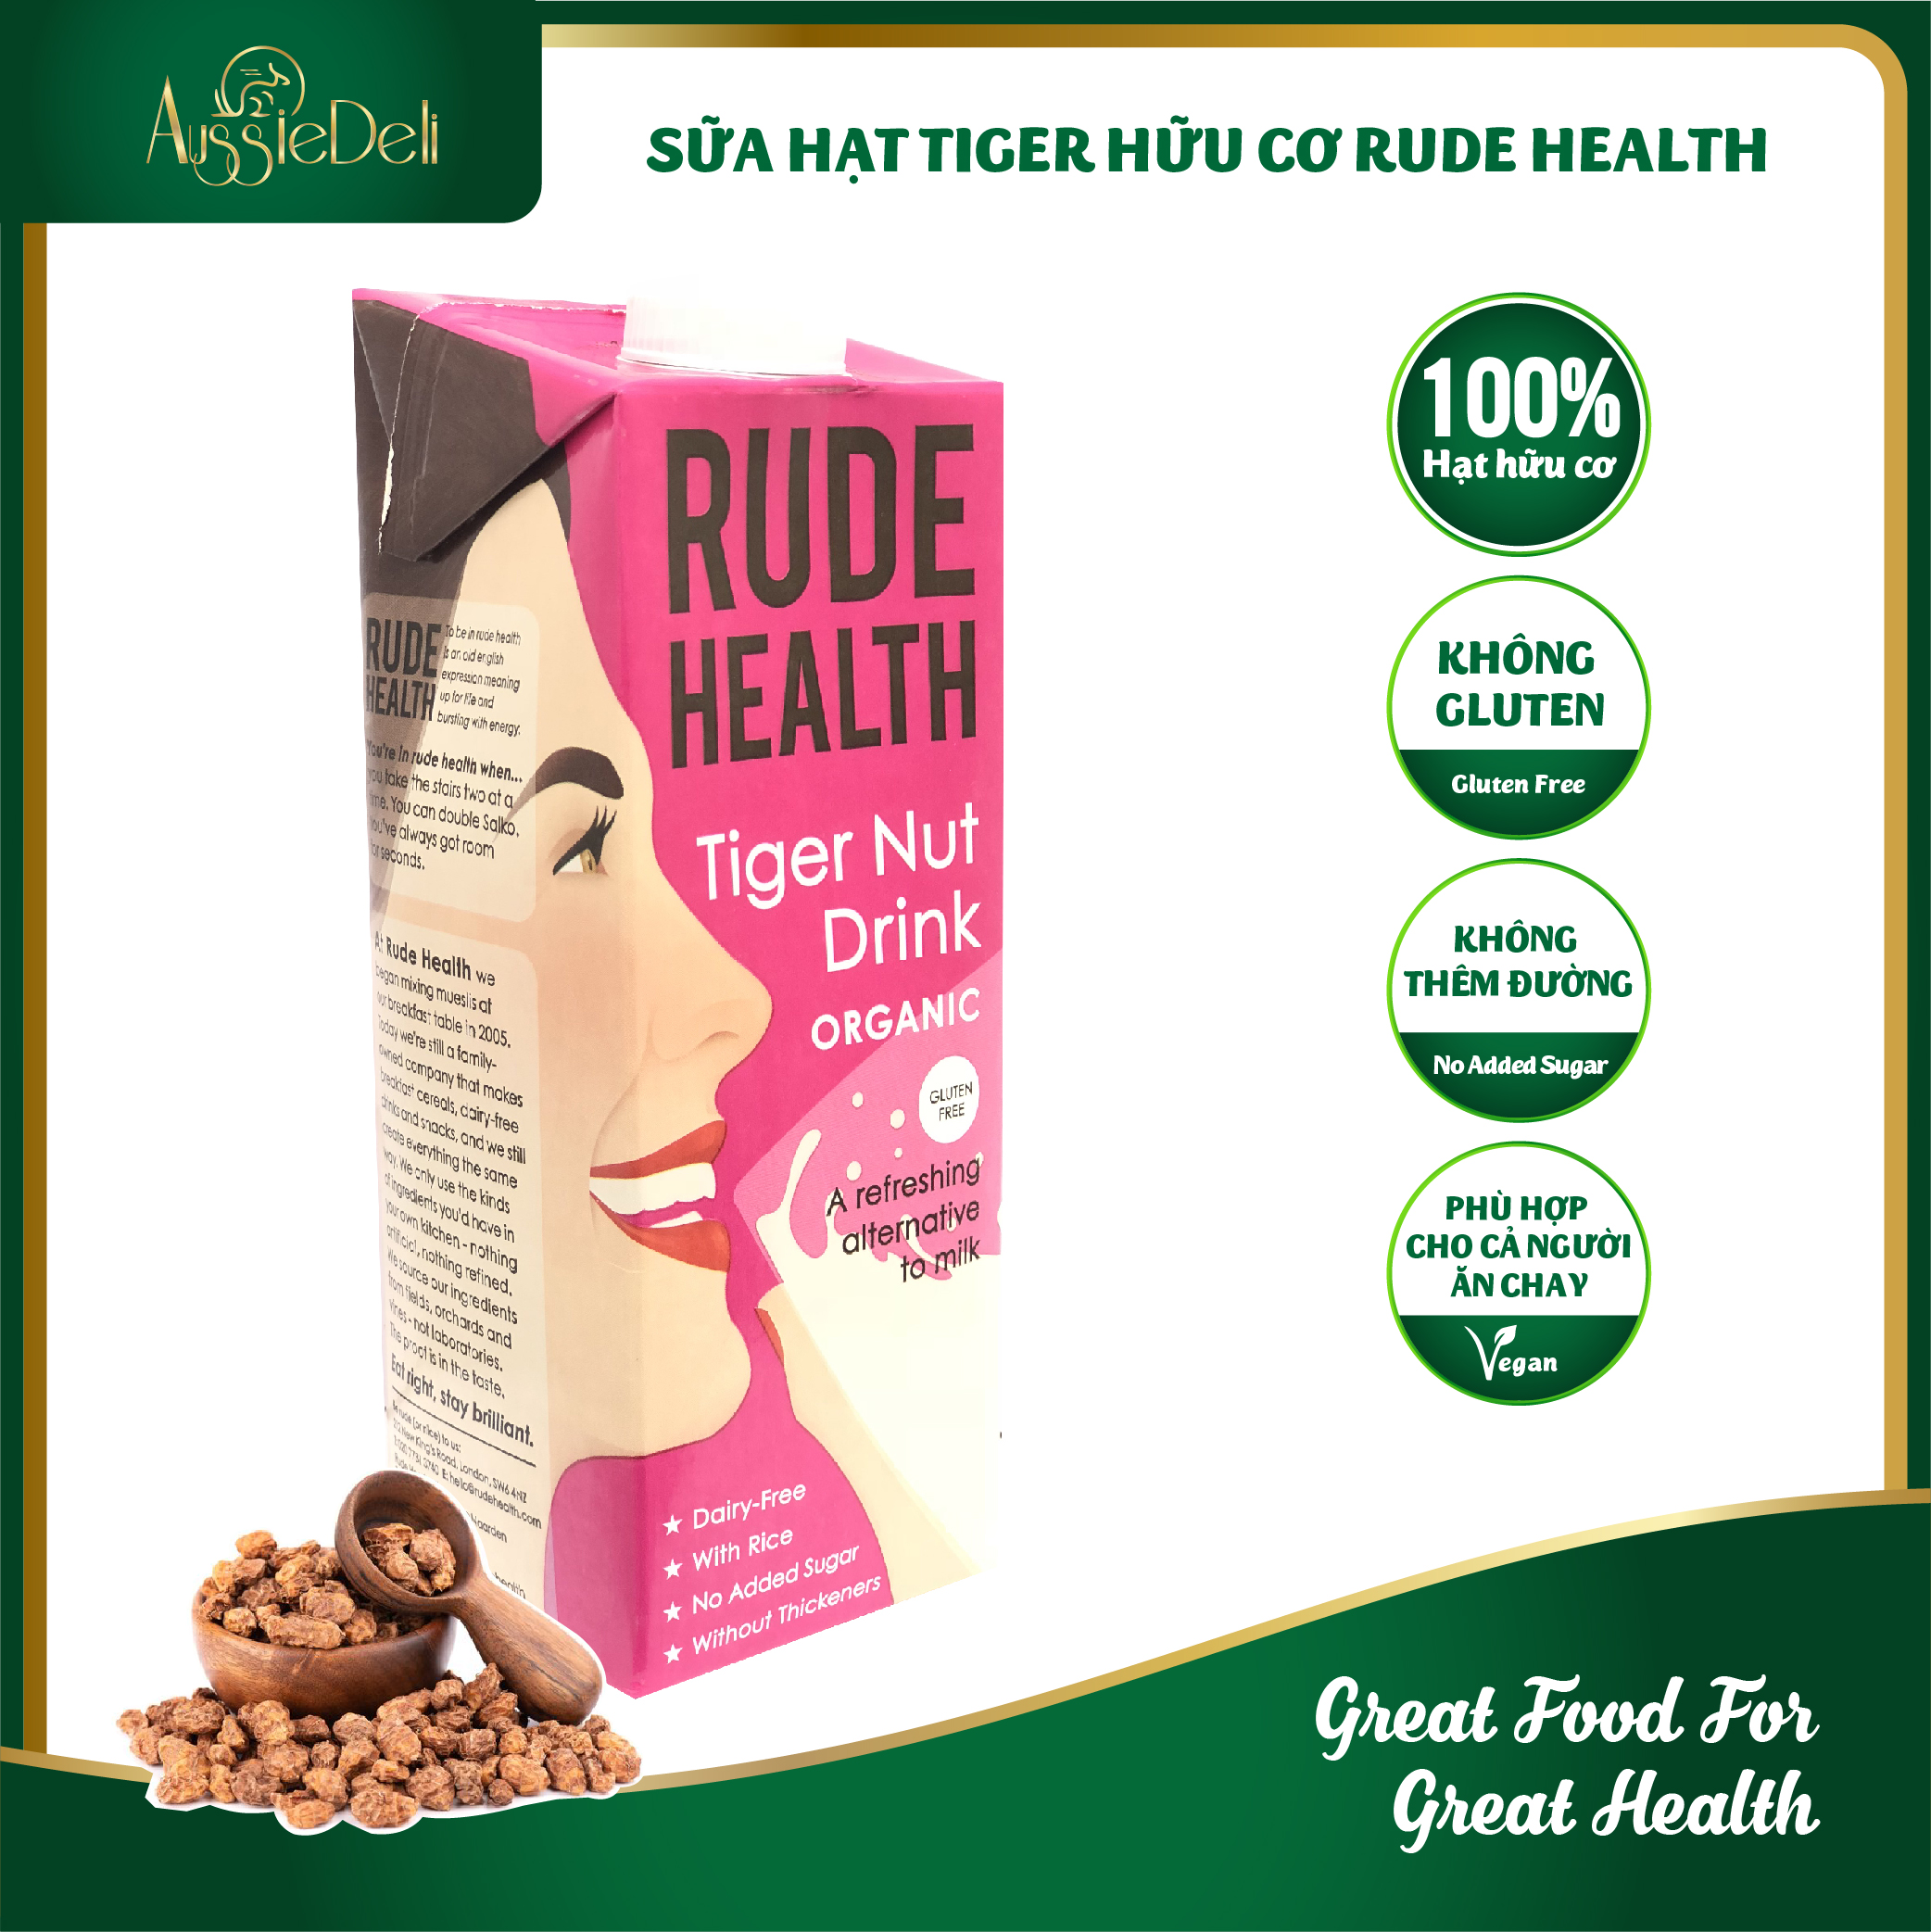 [HCM]Sữa Hạt Hổ Hữu Cơ & Không Gluten Rude Health - Organic & Gluten Free Tiger Nut Drink - Hộp 1L thumbnail